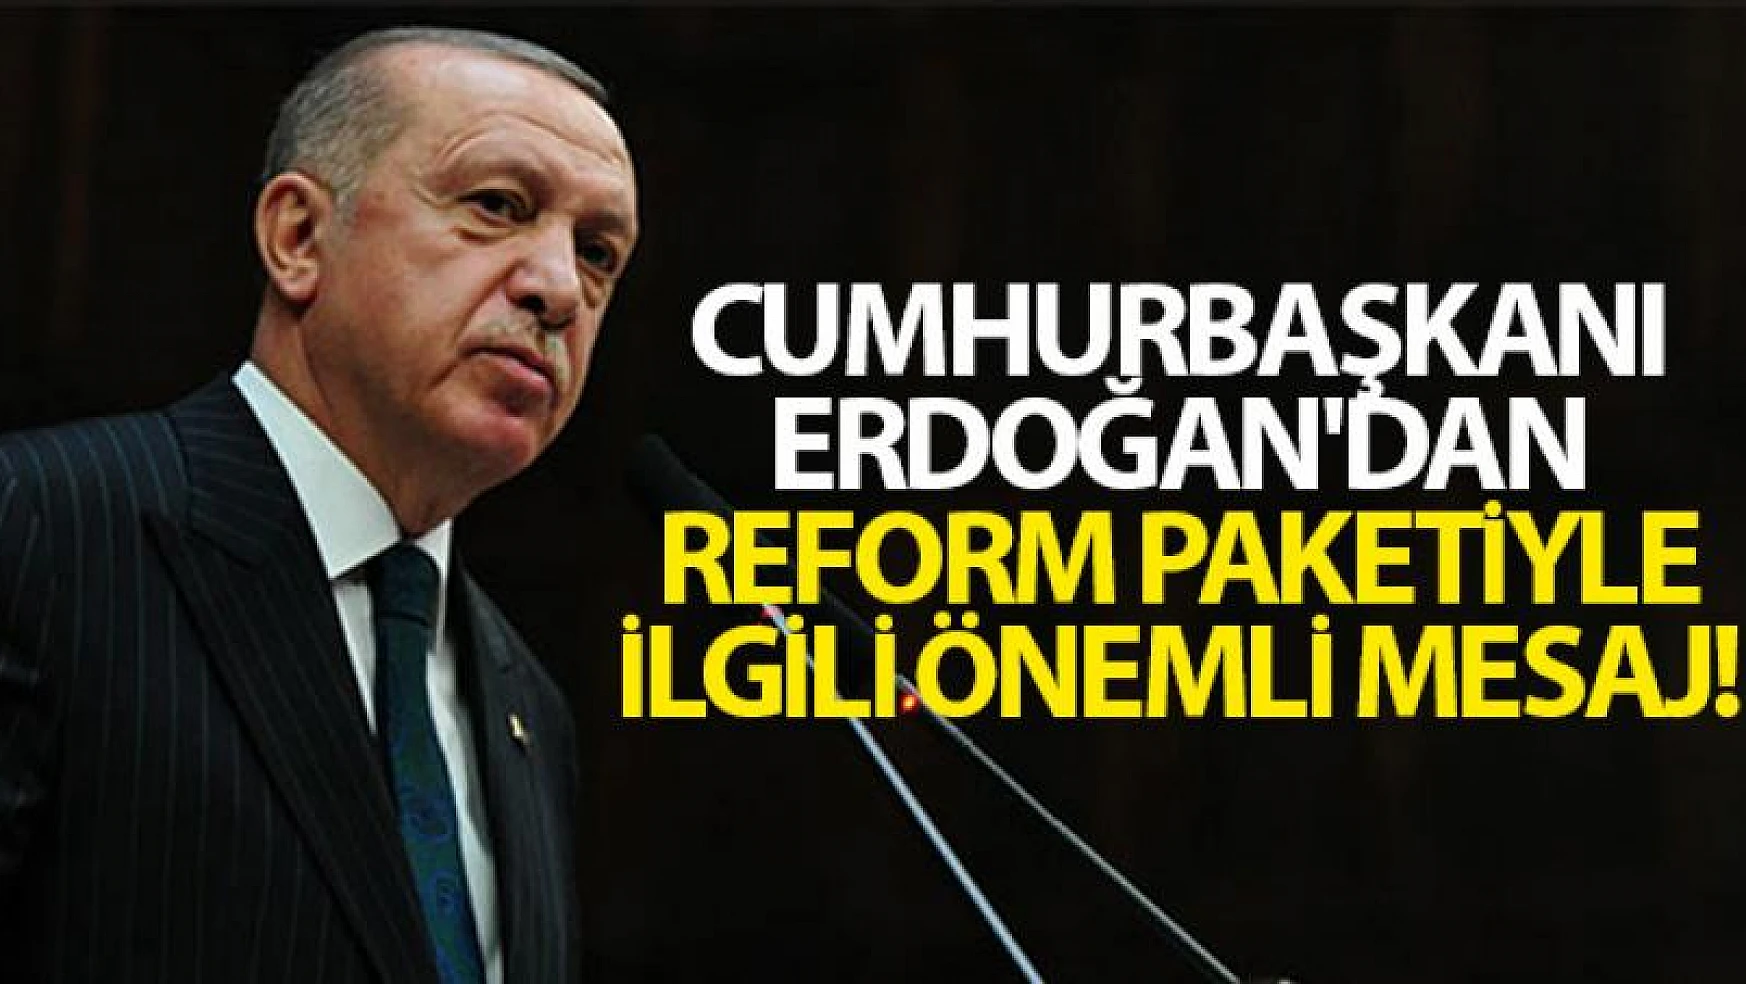 Cumhurbaşkanı Erdoğan'dan reform paketiyle ilgili önemli mesaj